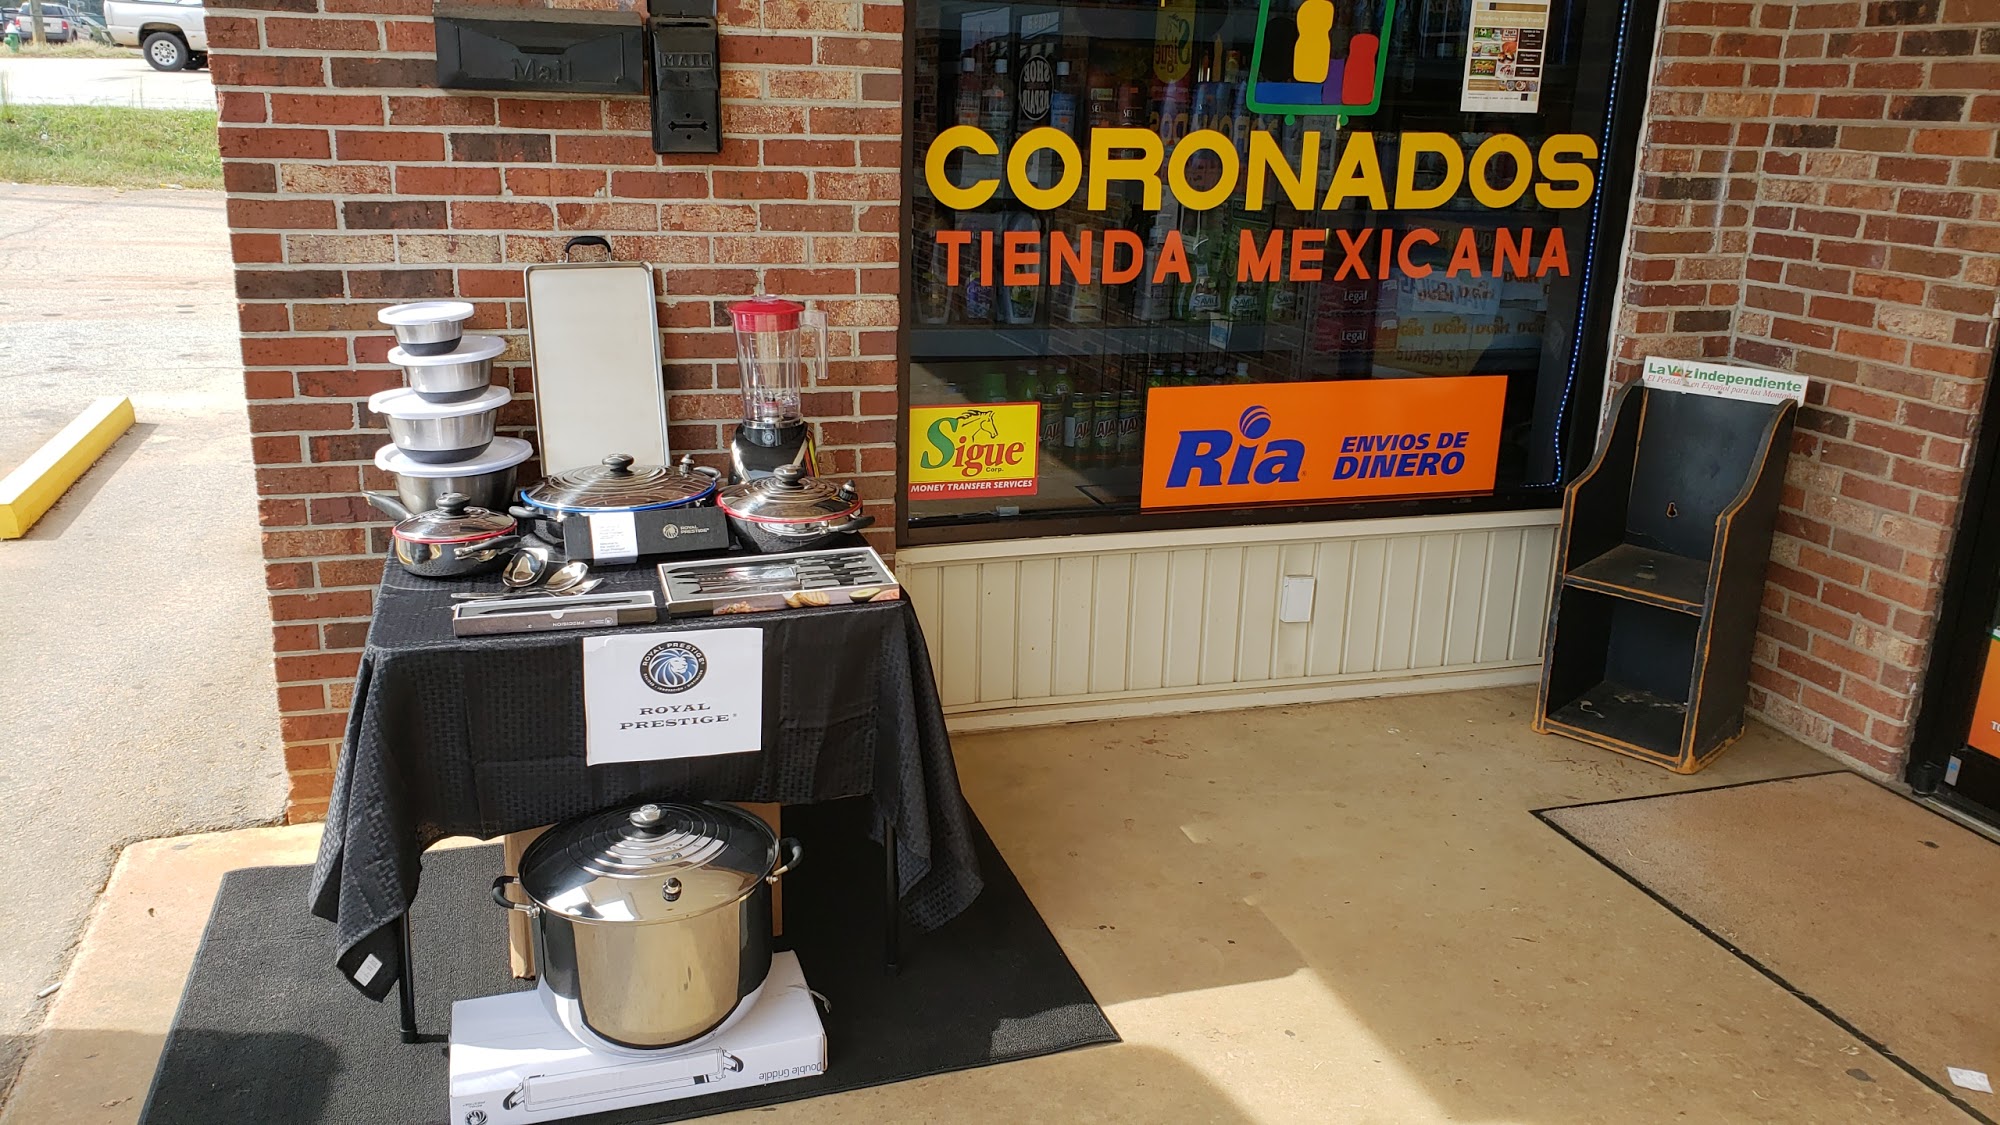 Coronado's Tienda Mexicana